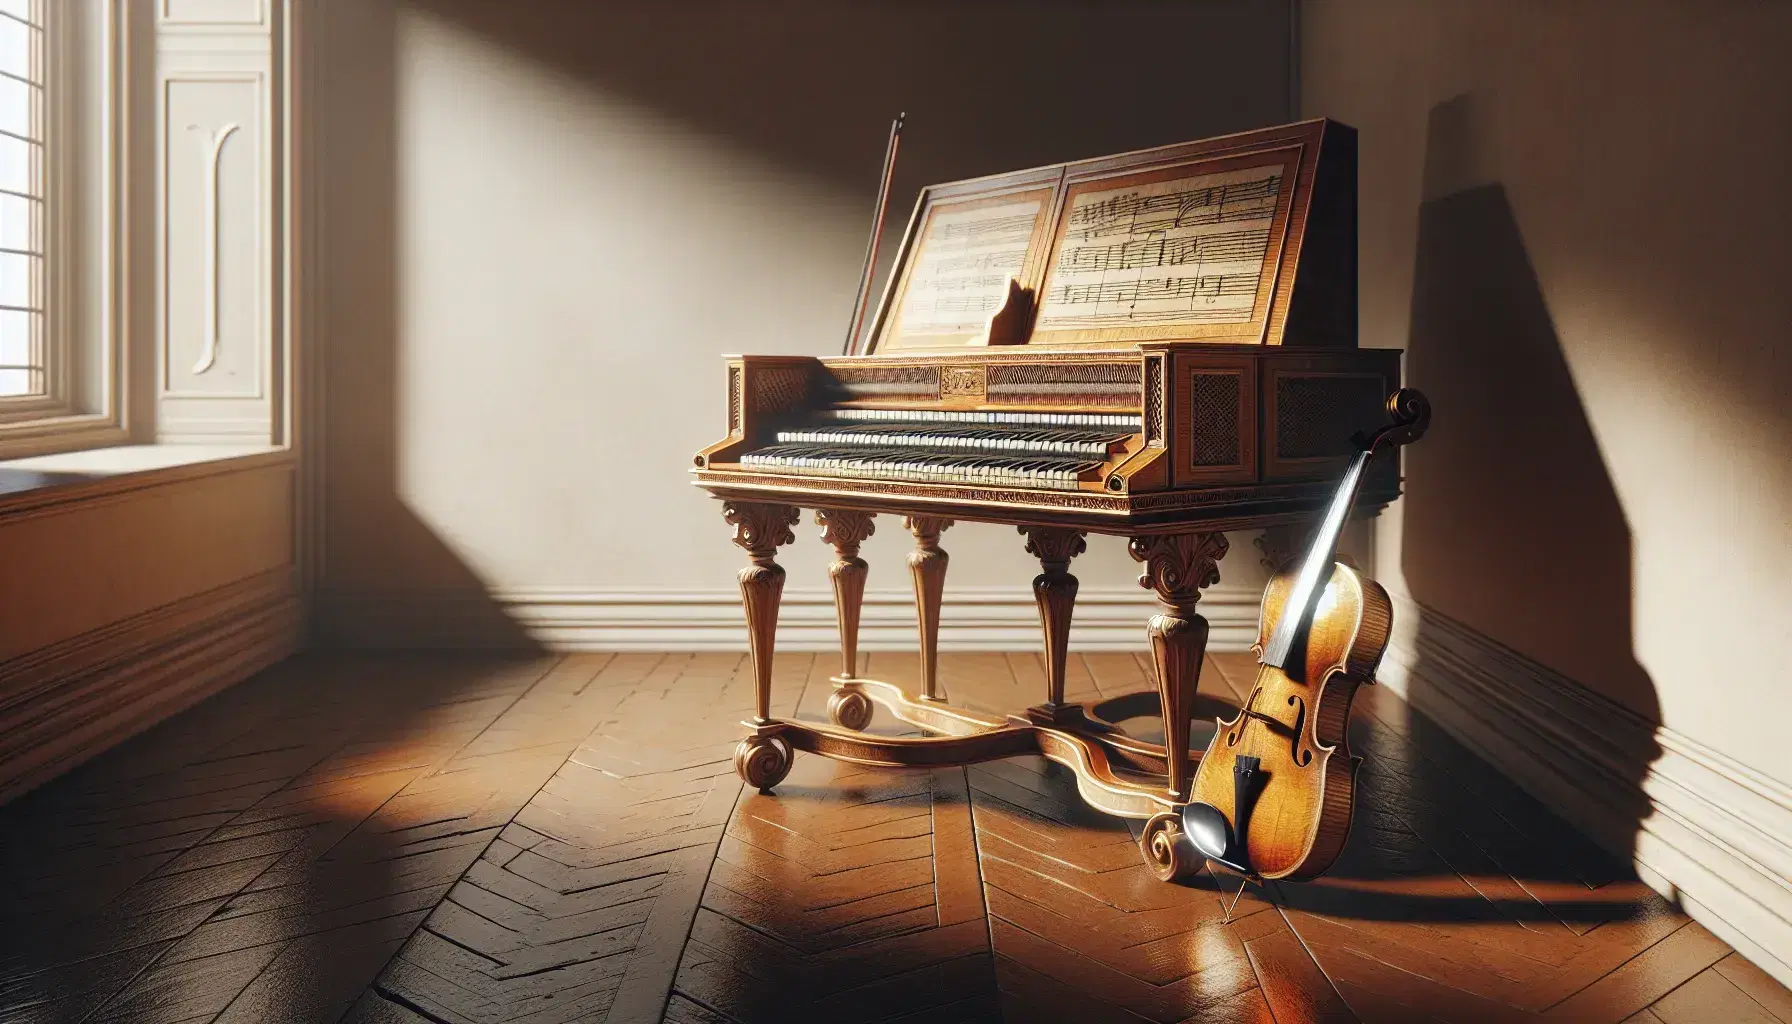 Clavicembalo barocco con gambe intagliate e finitura in legno chiaro, tastiera visibile, violino con archetto e foglio di musica vuoto su pavimento lucido.